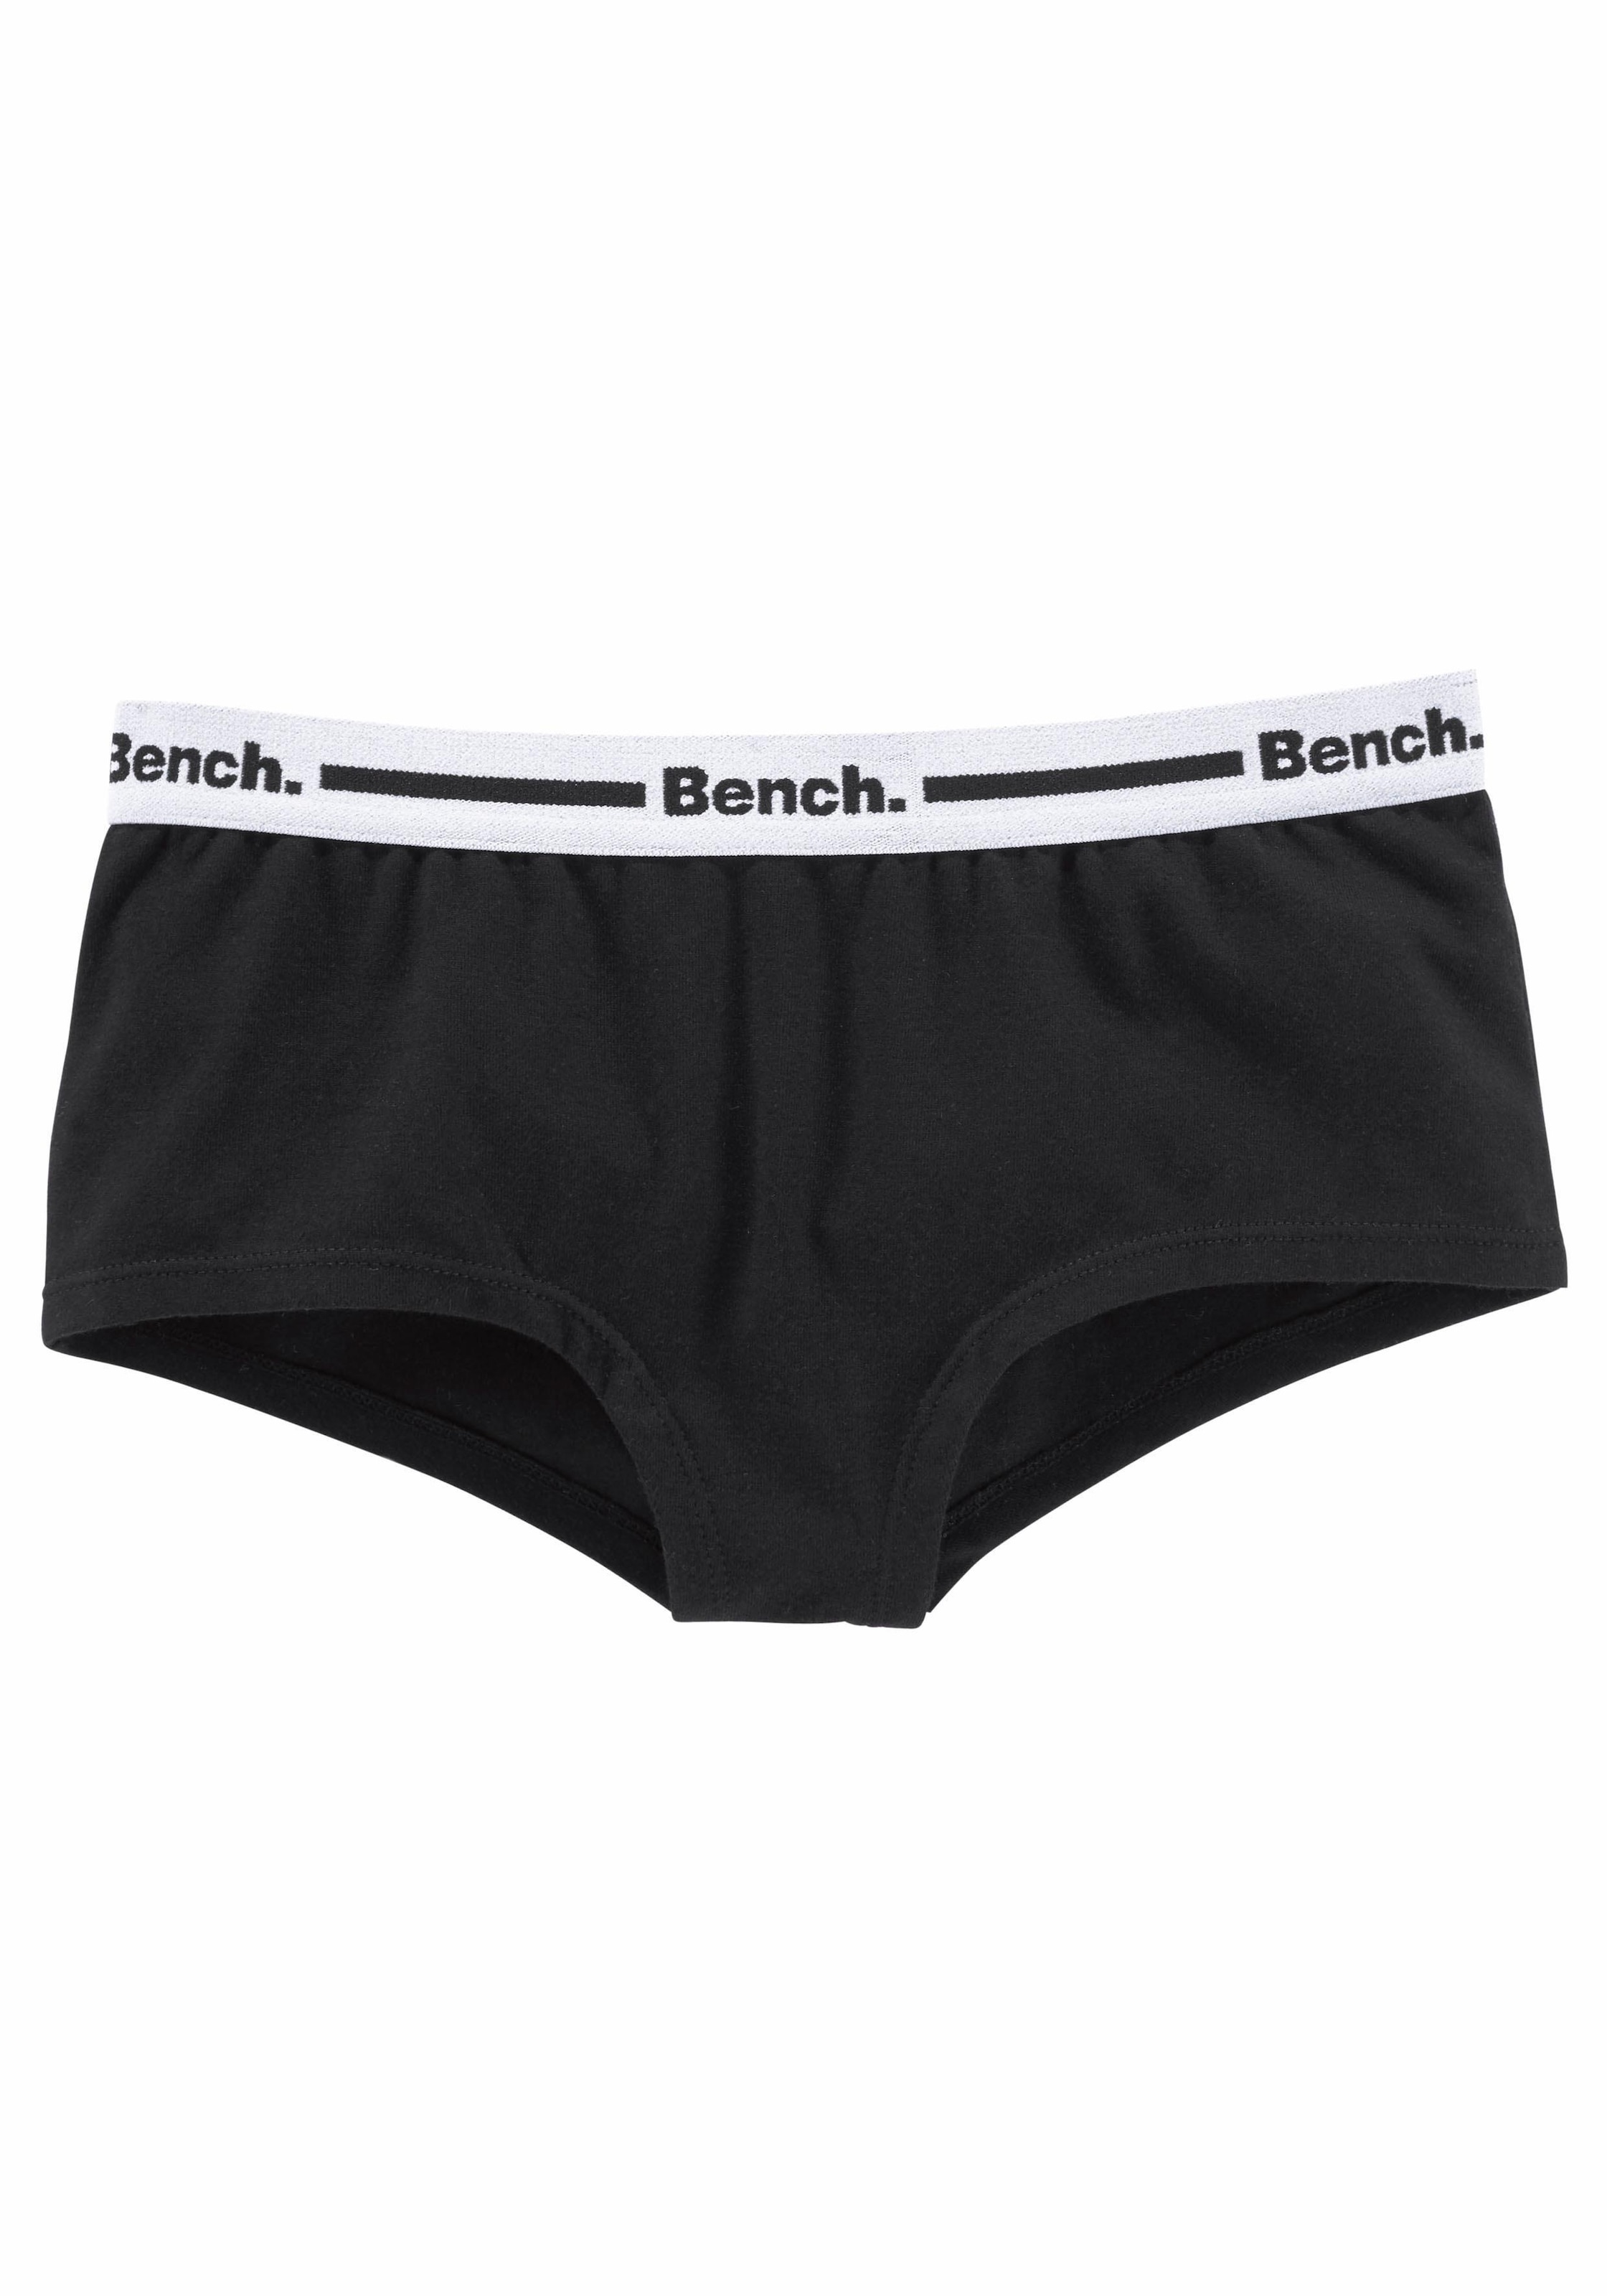 Bench. Panty, 3 Webbund kaufen (Packung, OTTO Logo mit bei St.)